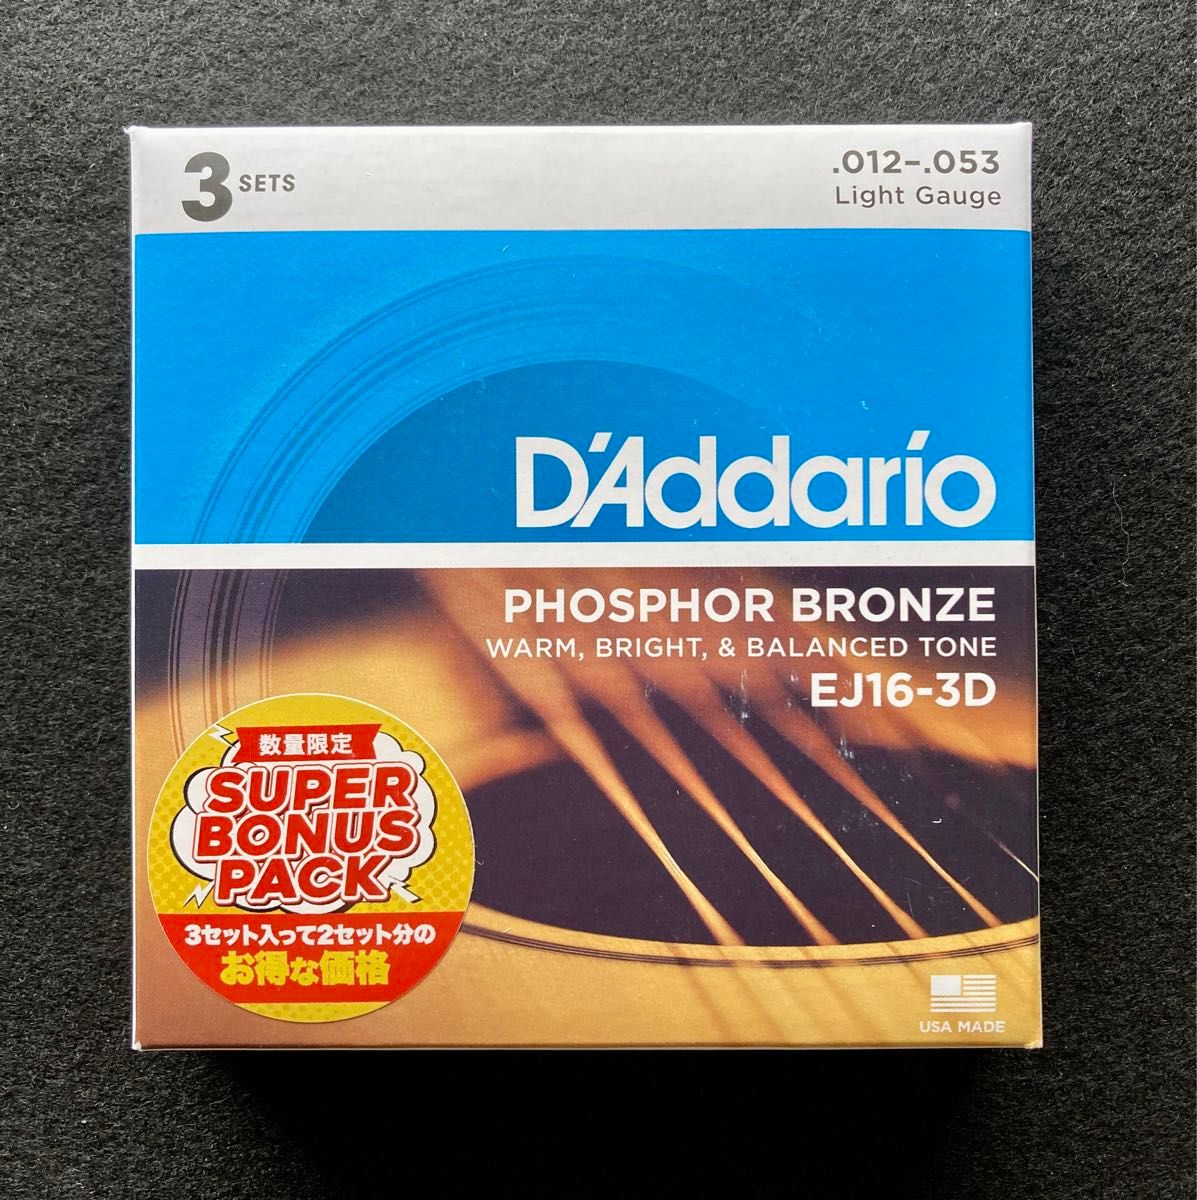 DAddario ダダリオ アコースティックギター弦 3SETボーナスパック フォスファーブロンズ Light 012-053 